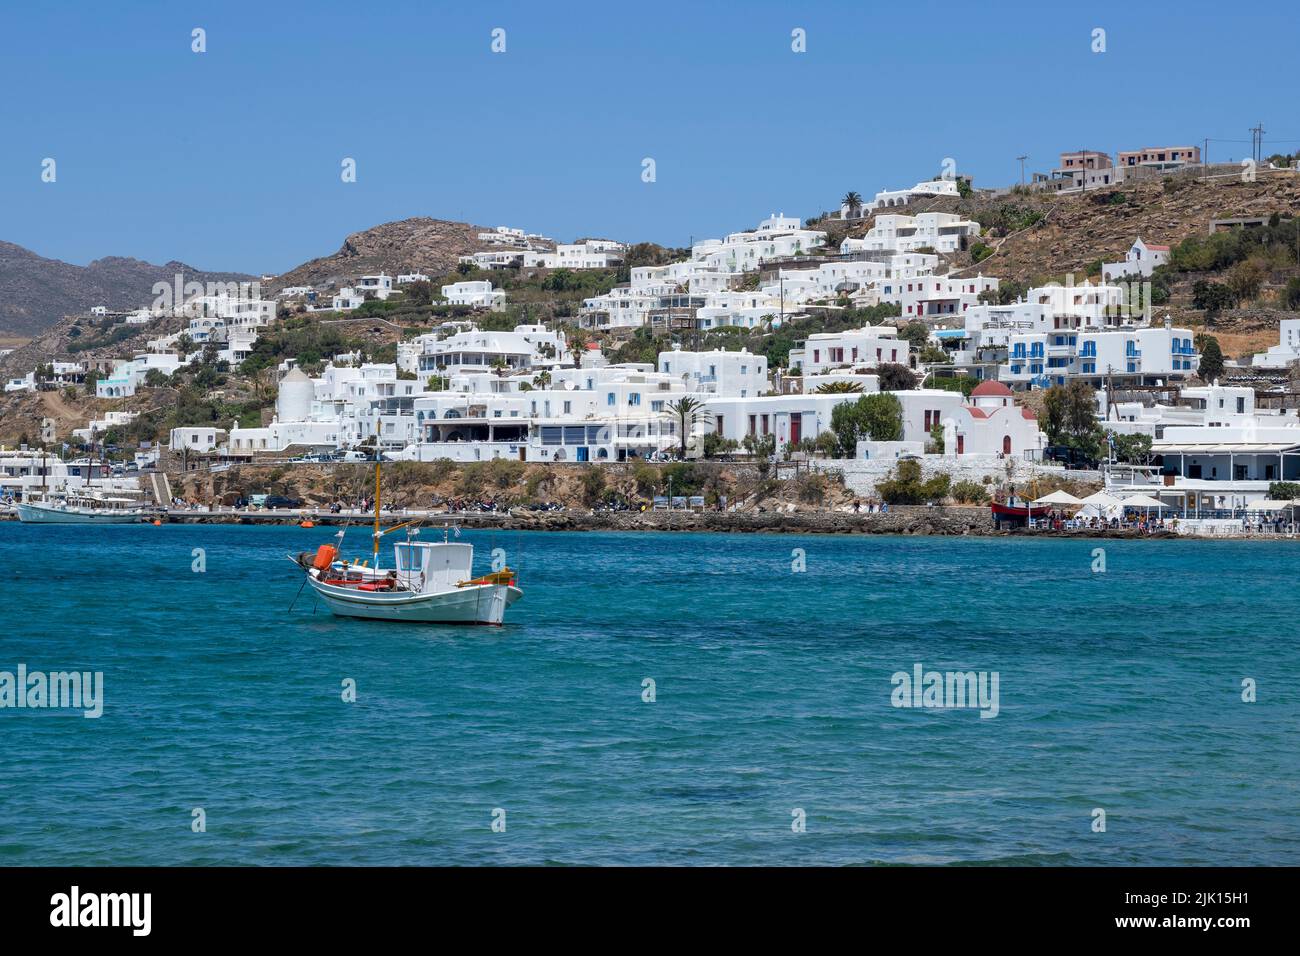 Bateau de pêche traditionnel amarré dans la baie près du vieux port de Mykonos, Mykonos, les Cyclades, la mer Egée, les îles grecques, Grèce, Europe Banque D'Images